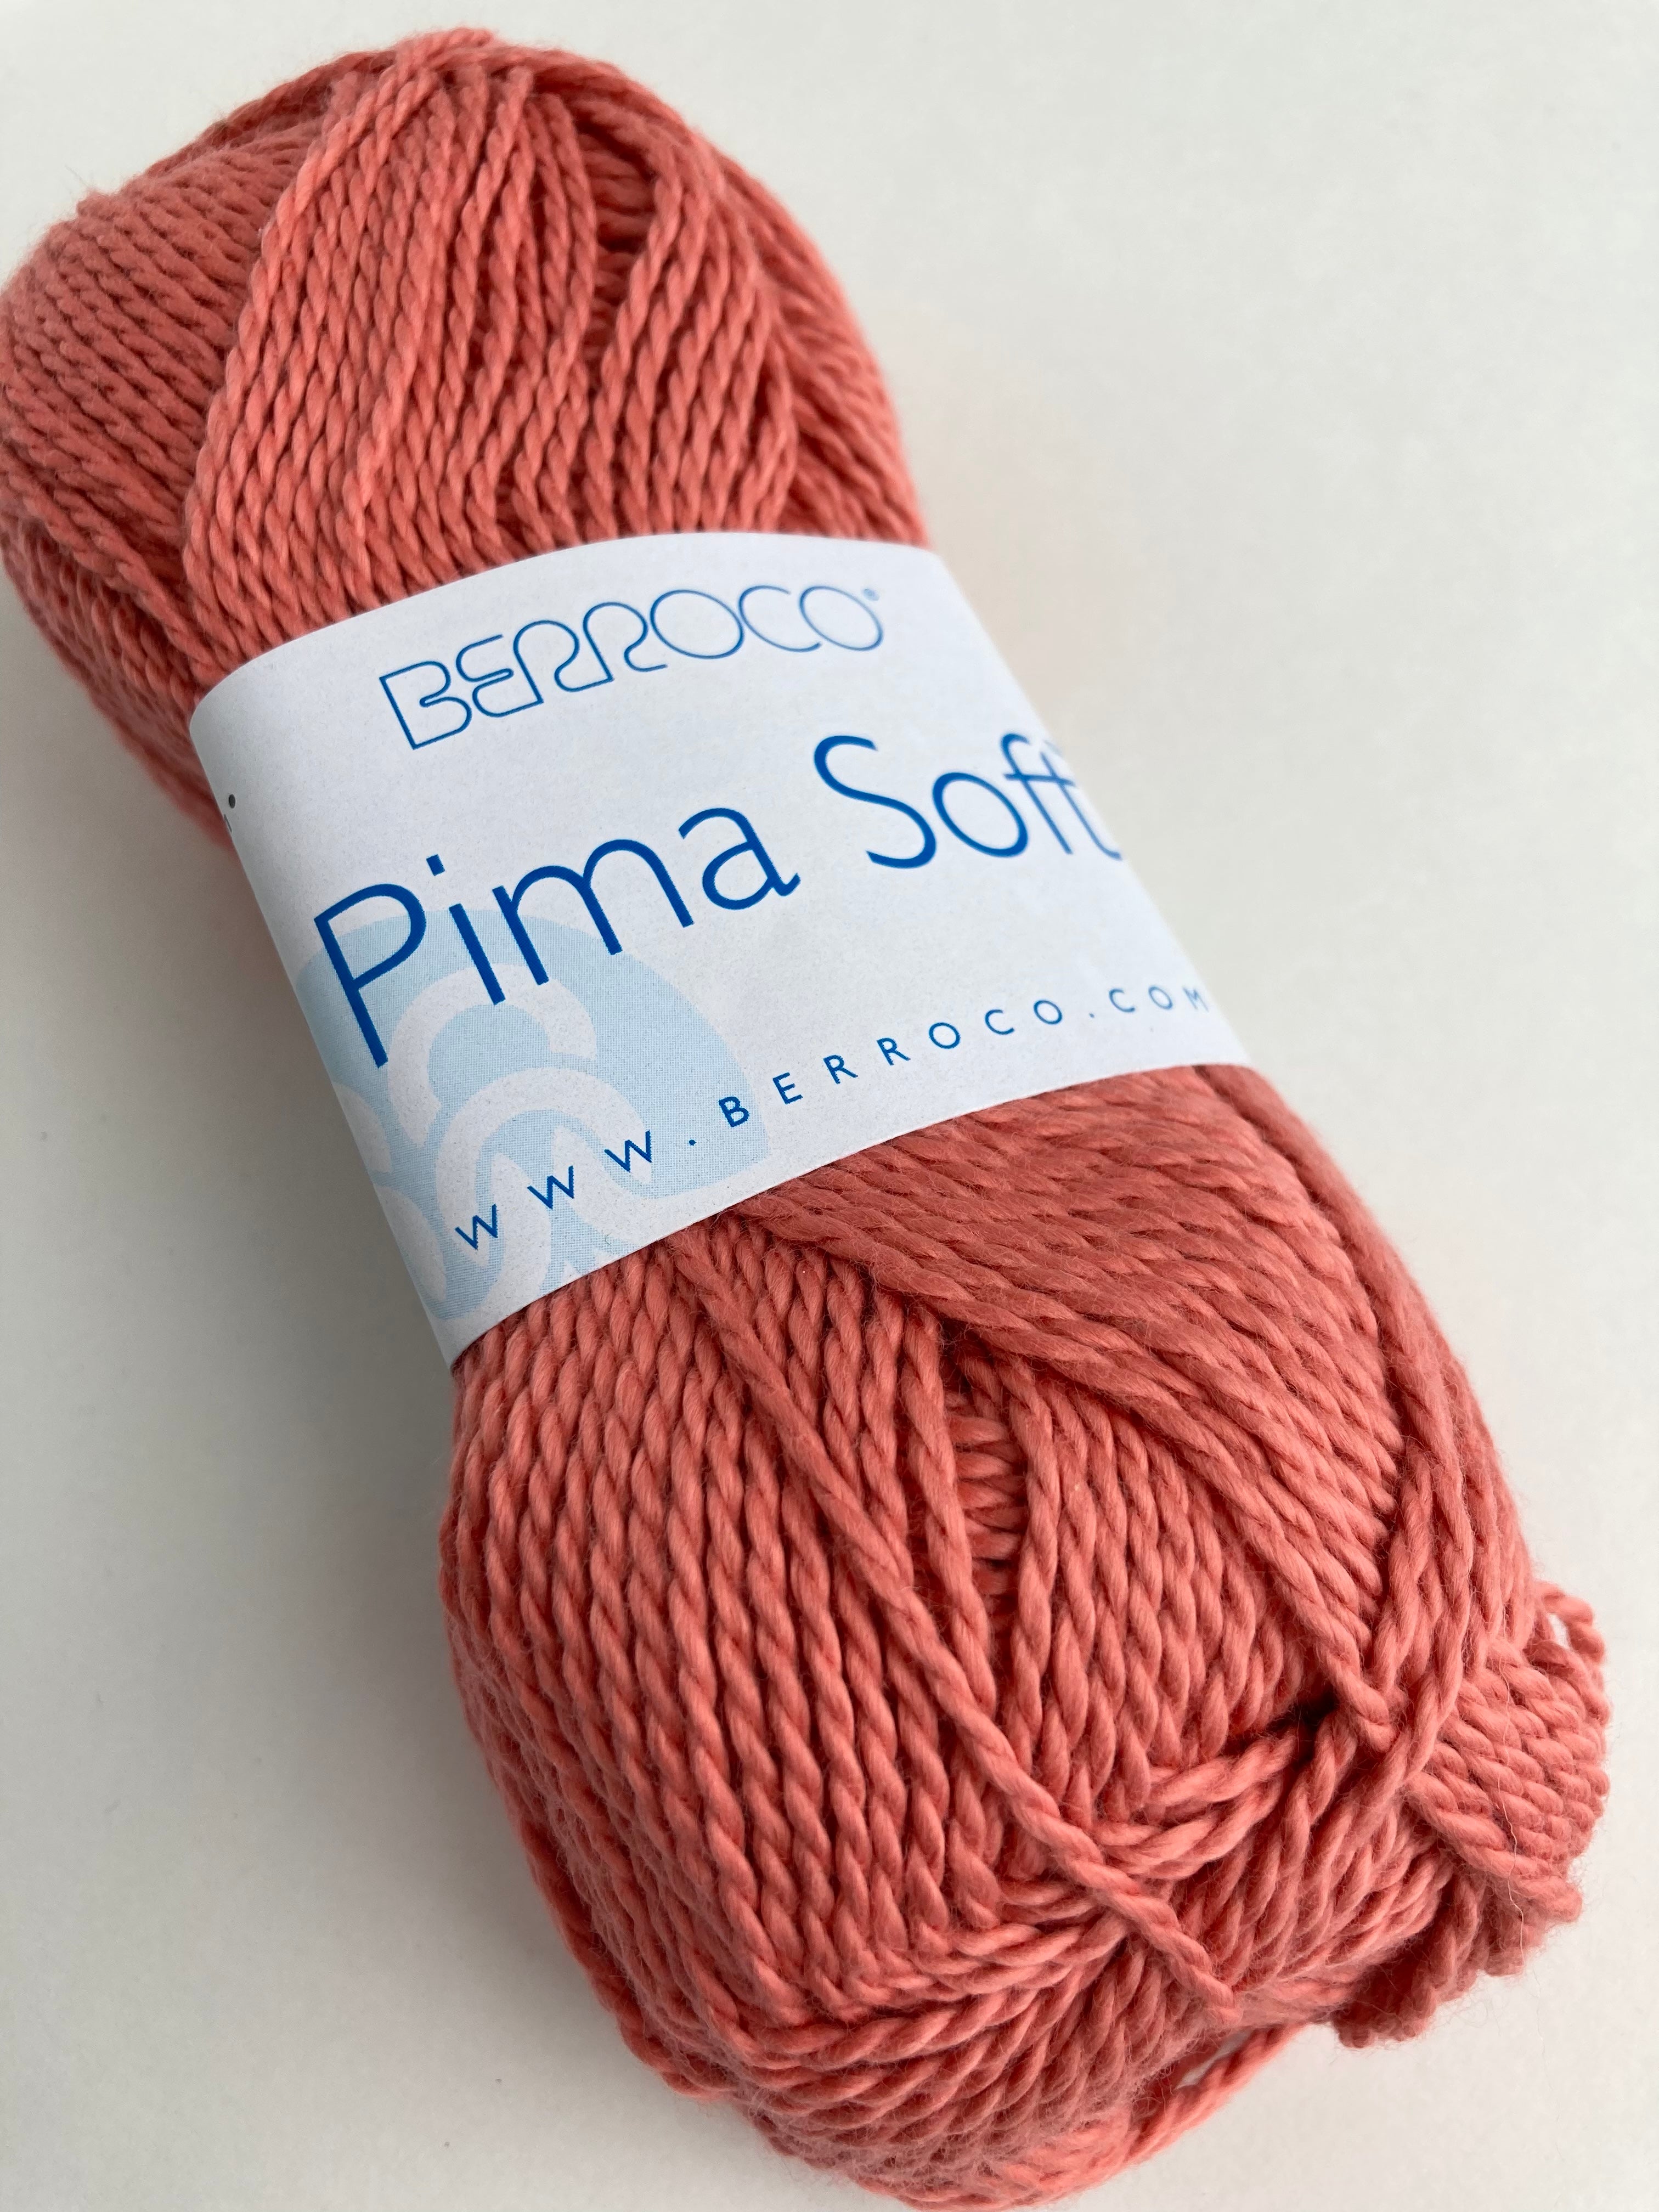 Coral 4633 - Pima Soft from Berroco